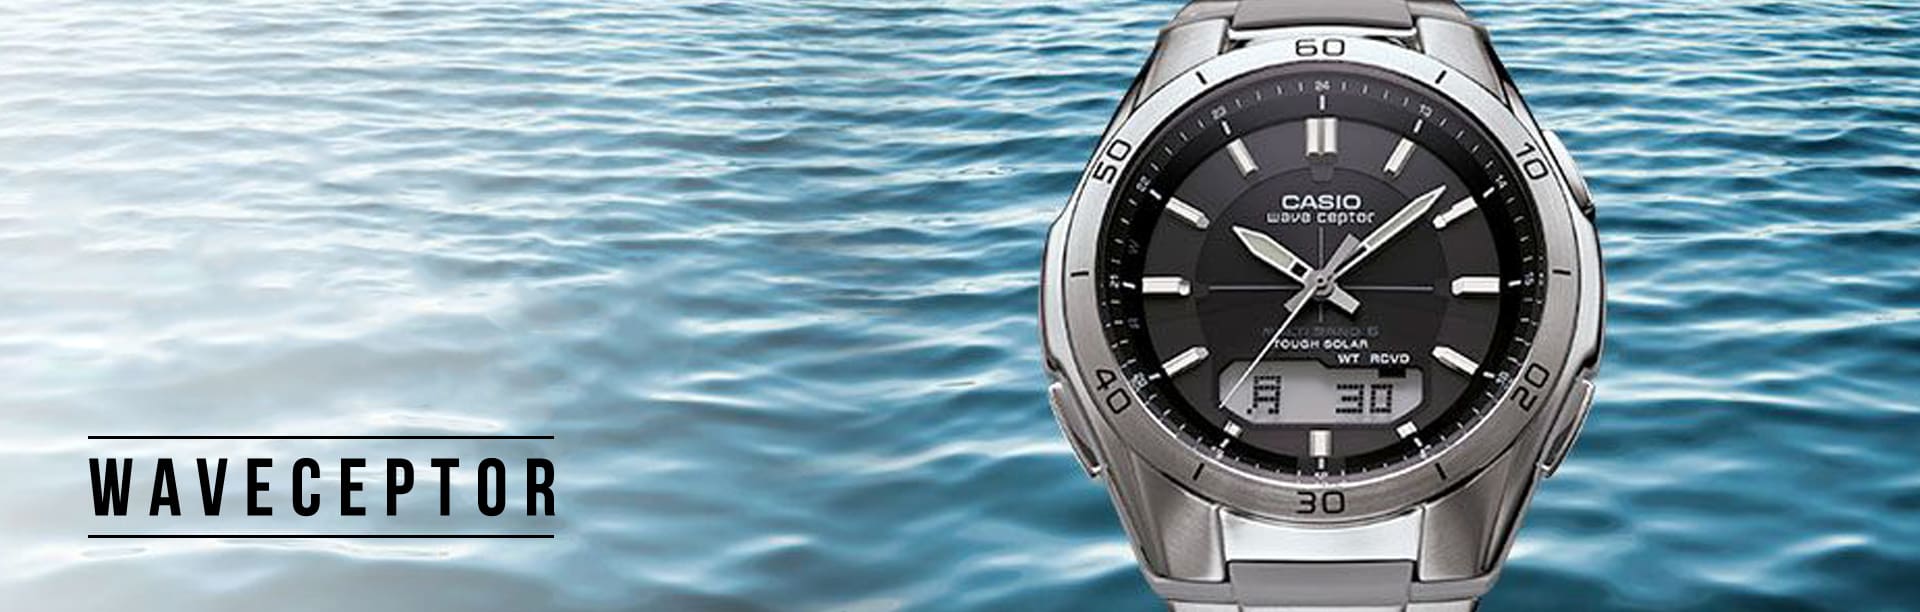 Casio Waveceptor Watch with ocean background